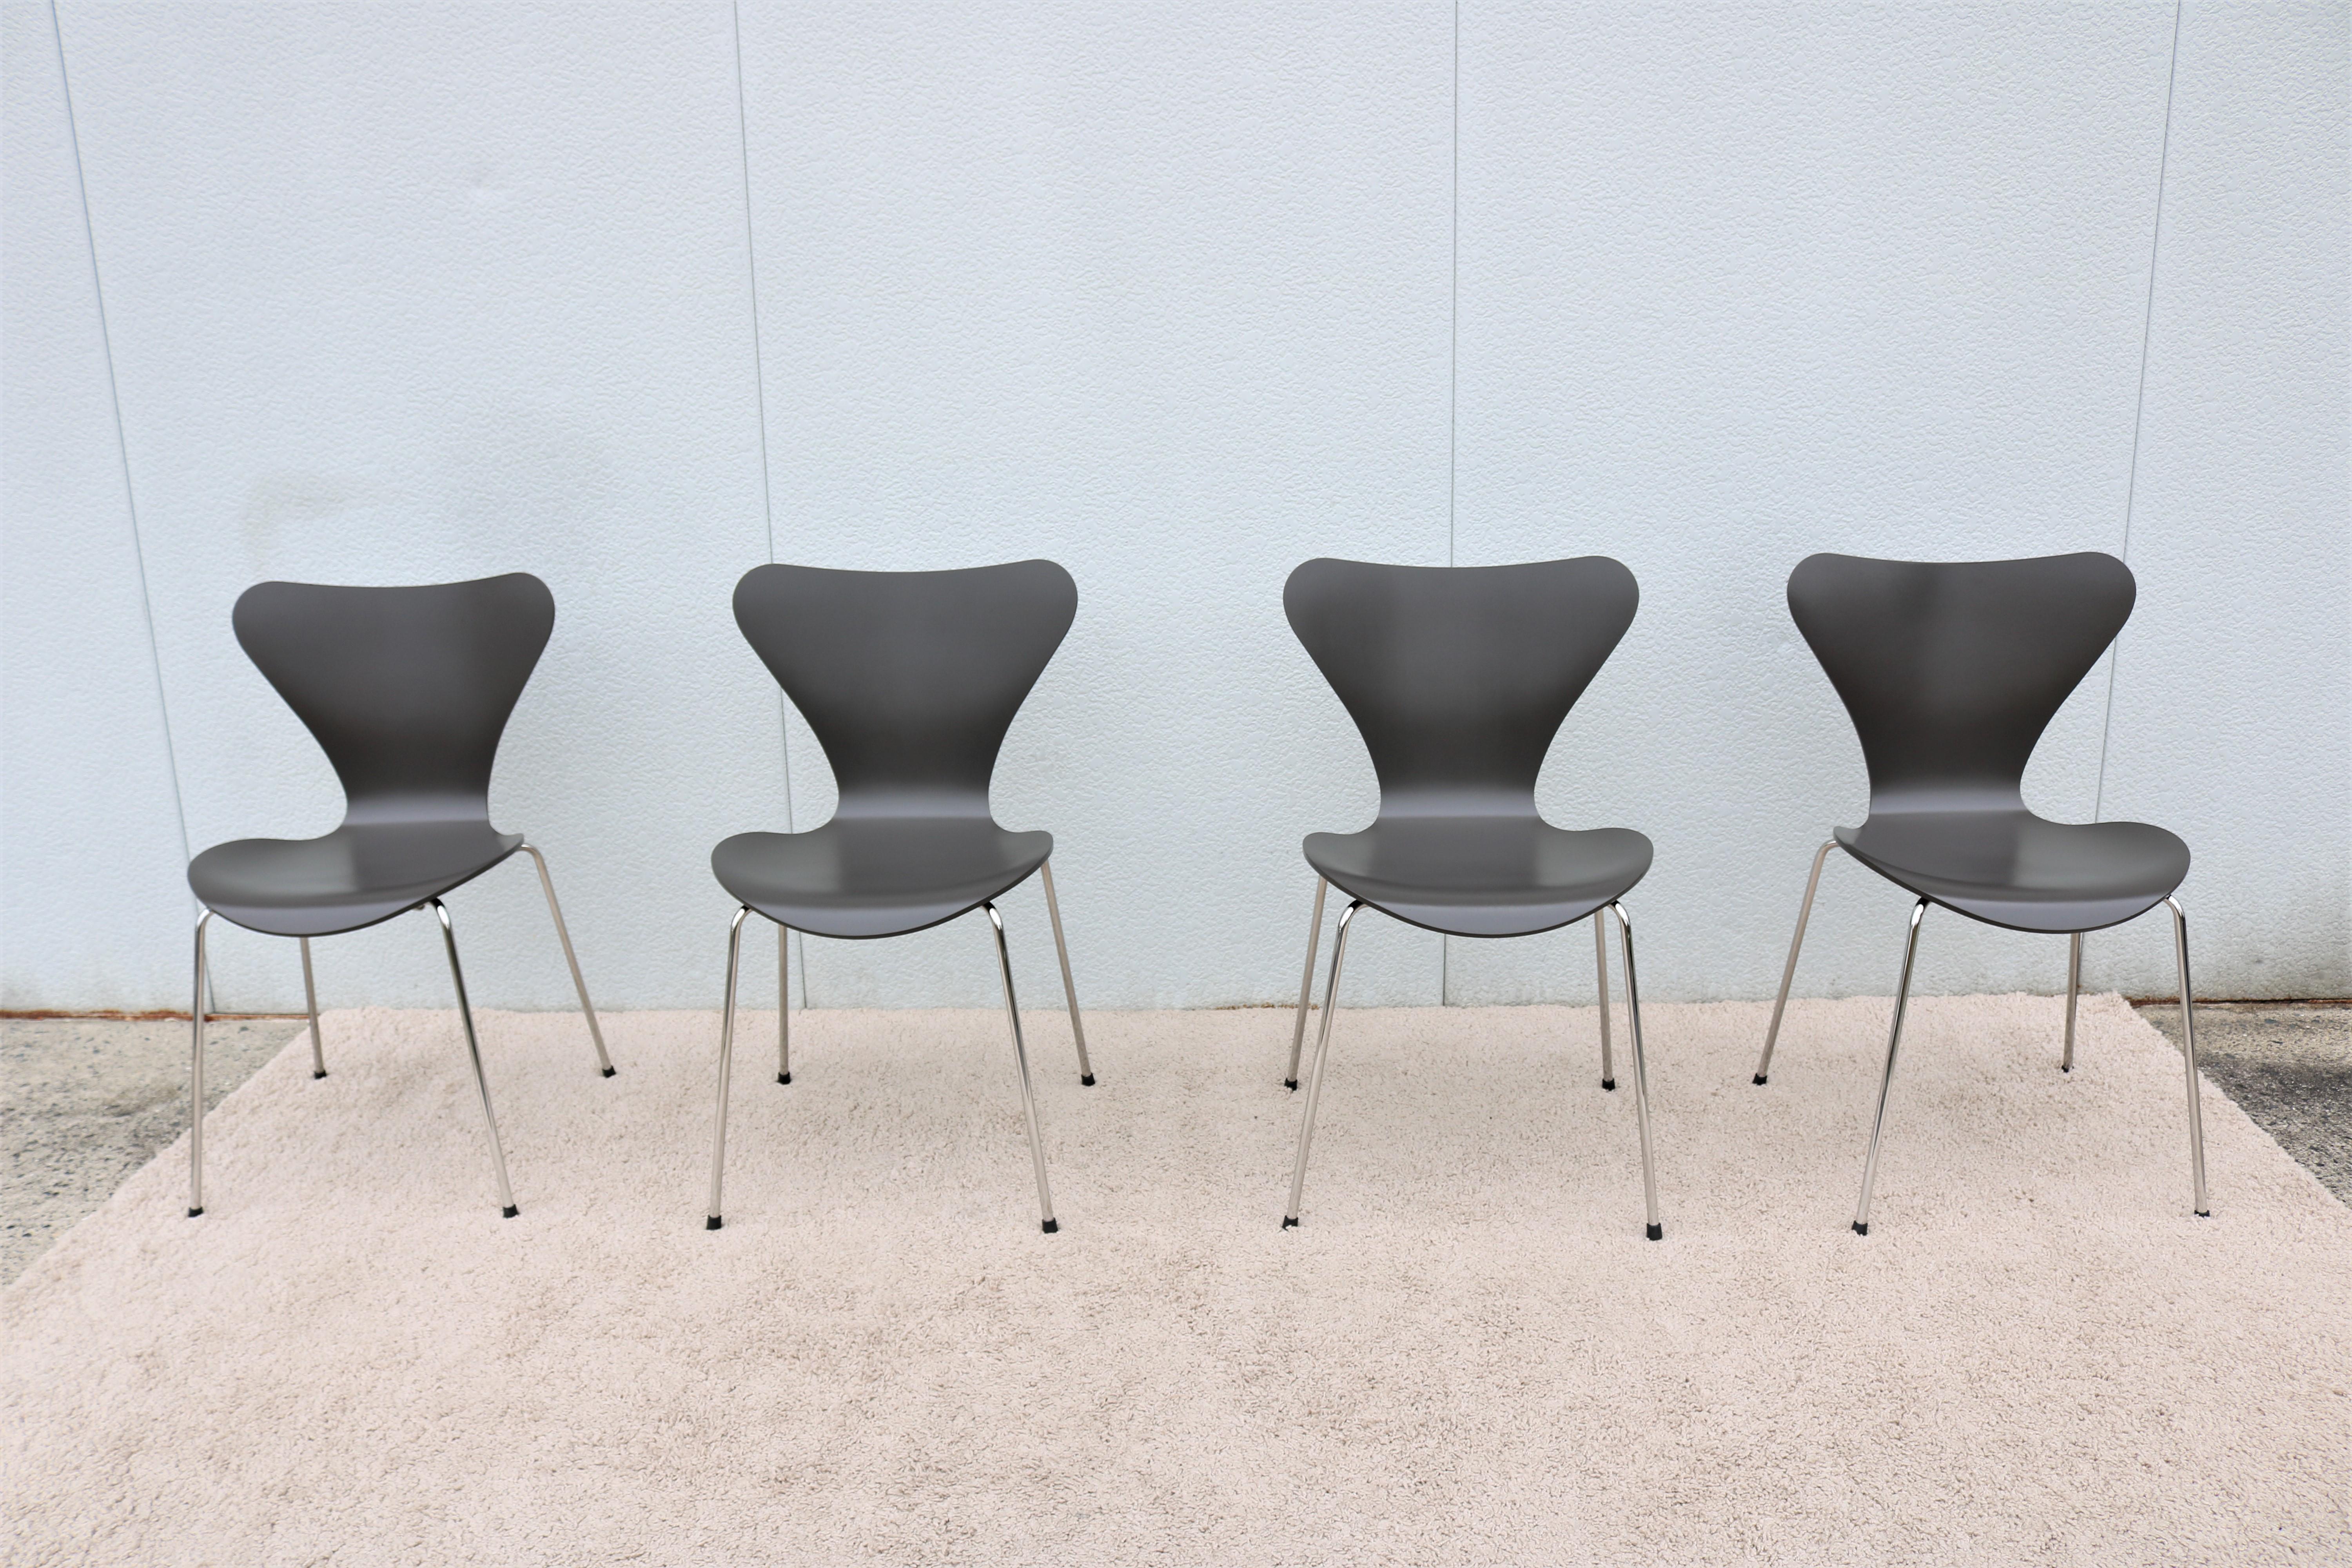 Diese elegante und vielseitige Serie von 7 Stühlen wurde 1955 von dem Designer Arne Jacobsen eingeführt und wurde sofort zu einer Design-Ikone.
Der sehr bequeme Bugholzsitz ist der bei weitem meistverkaufte Stuhl in der Geschichte von Fritz